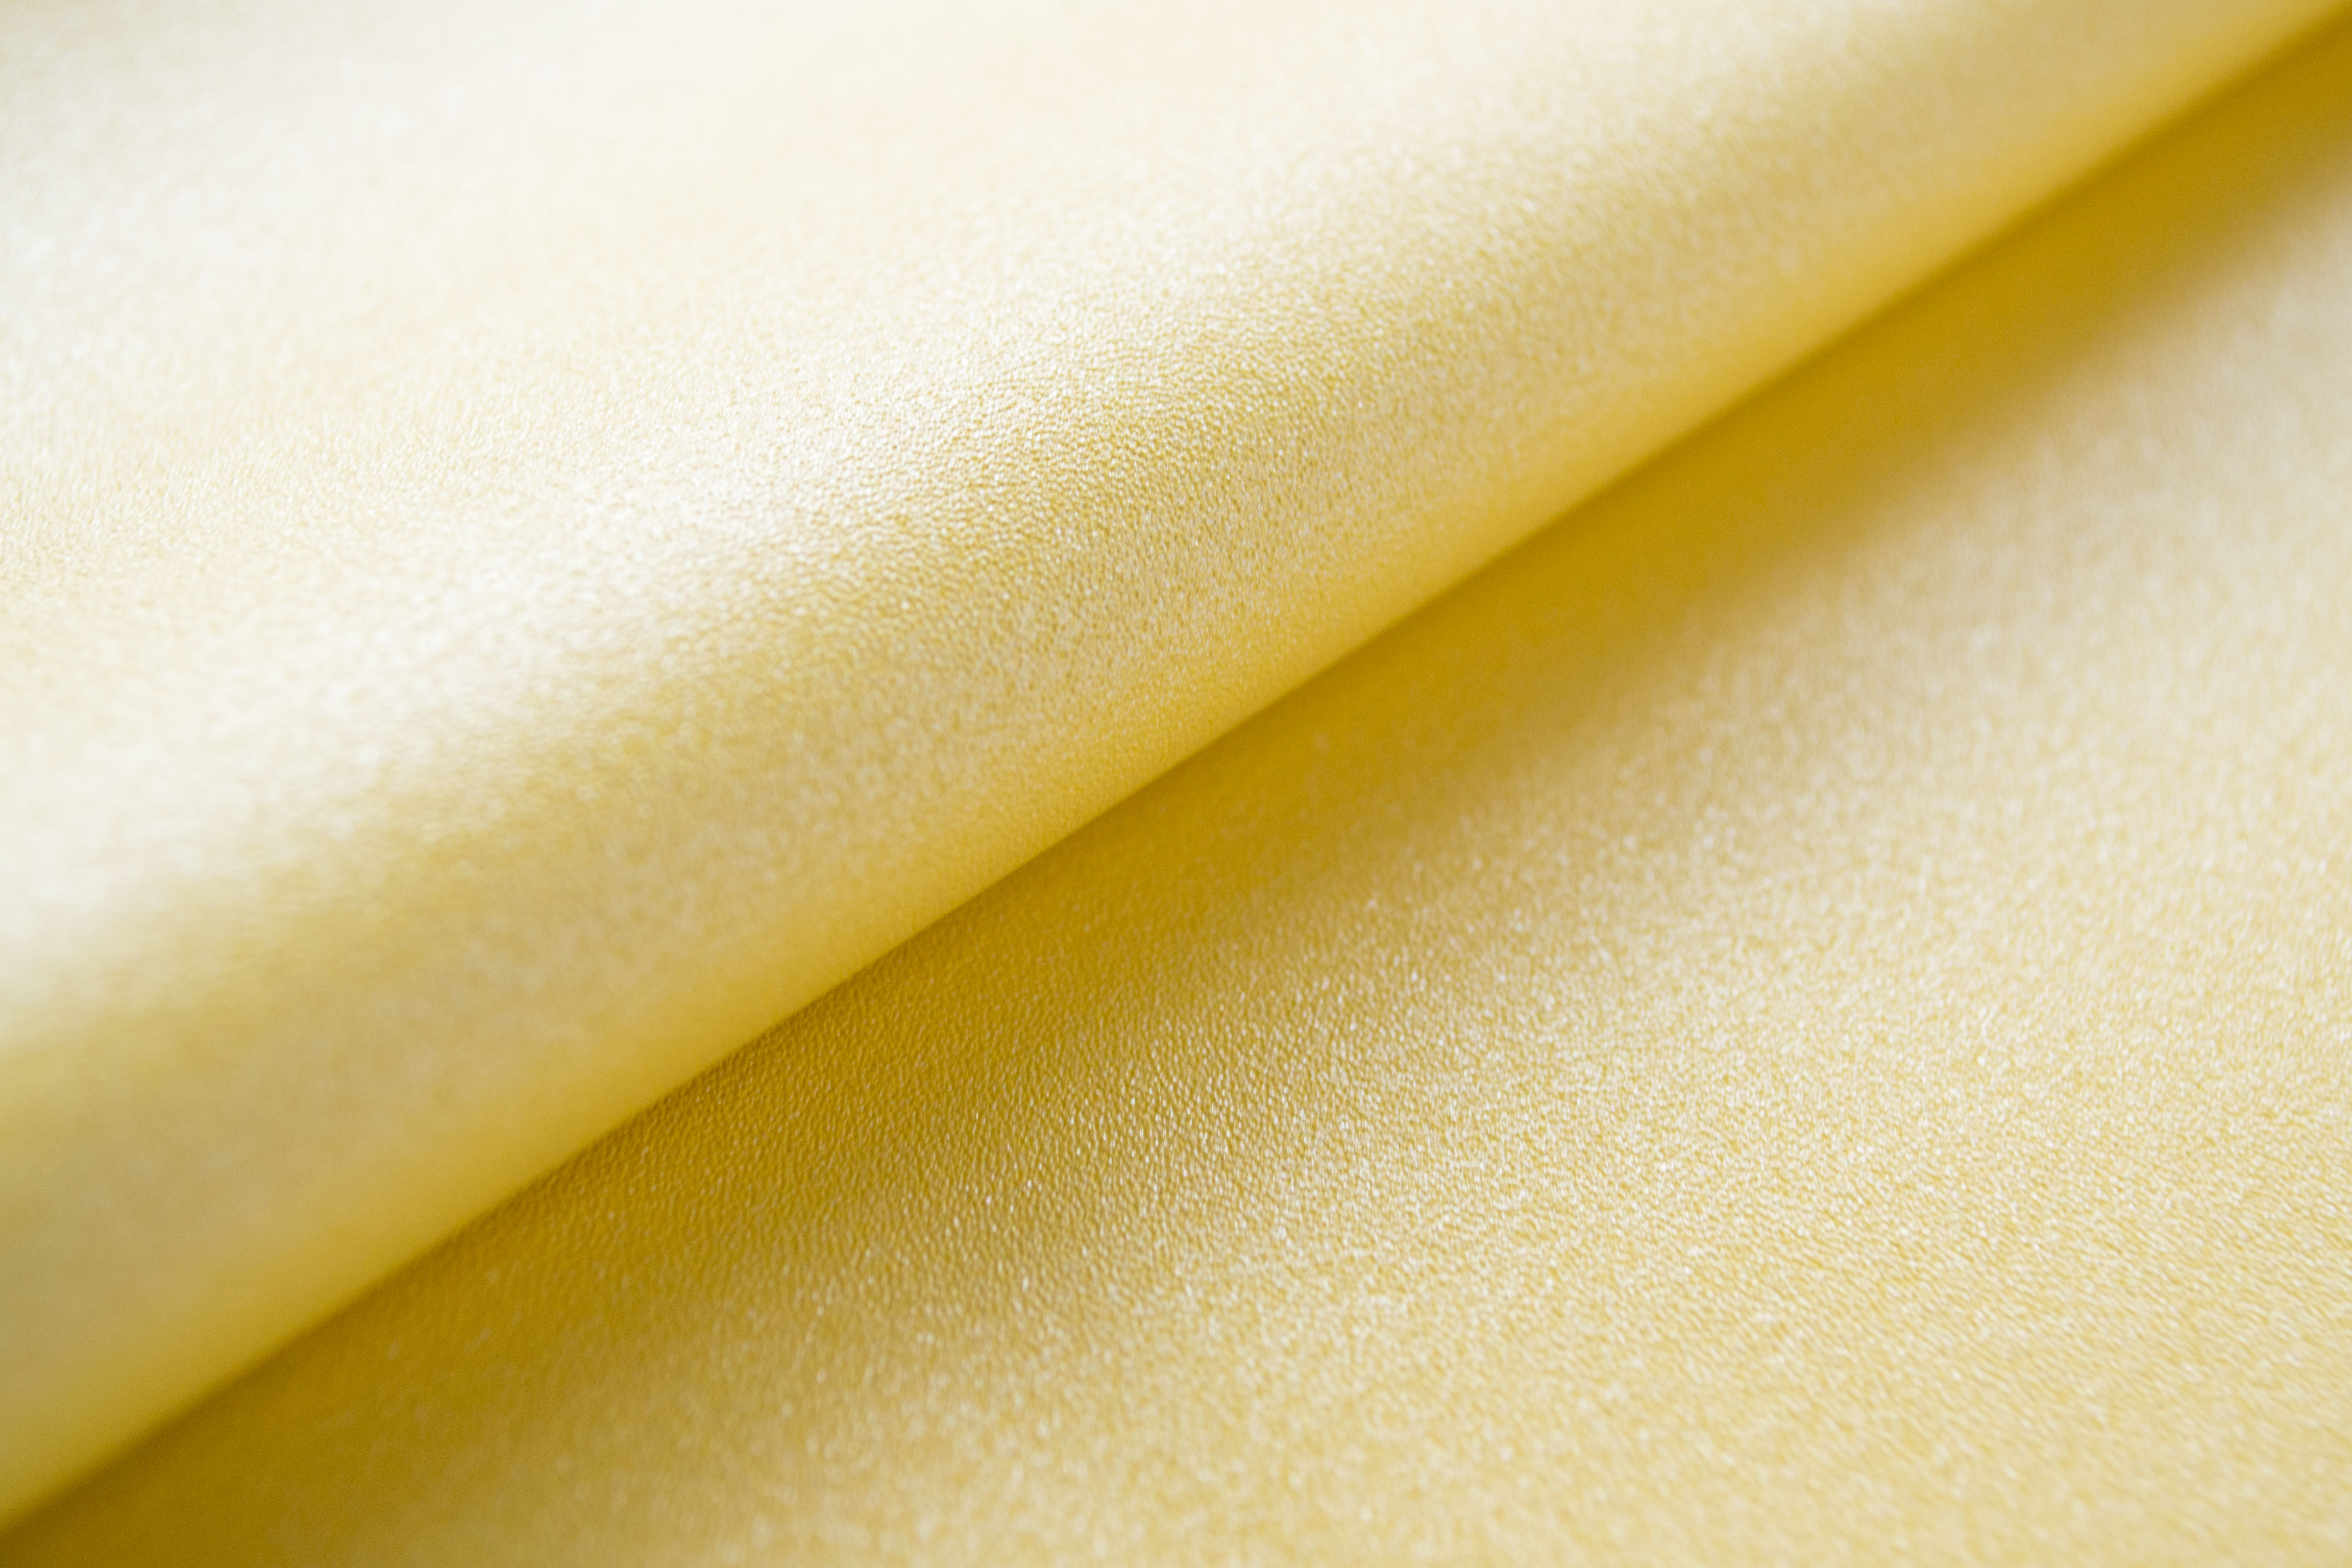 Кожзам на тканевой основе с жемчужным напылением, Желтый, 46х70 см